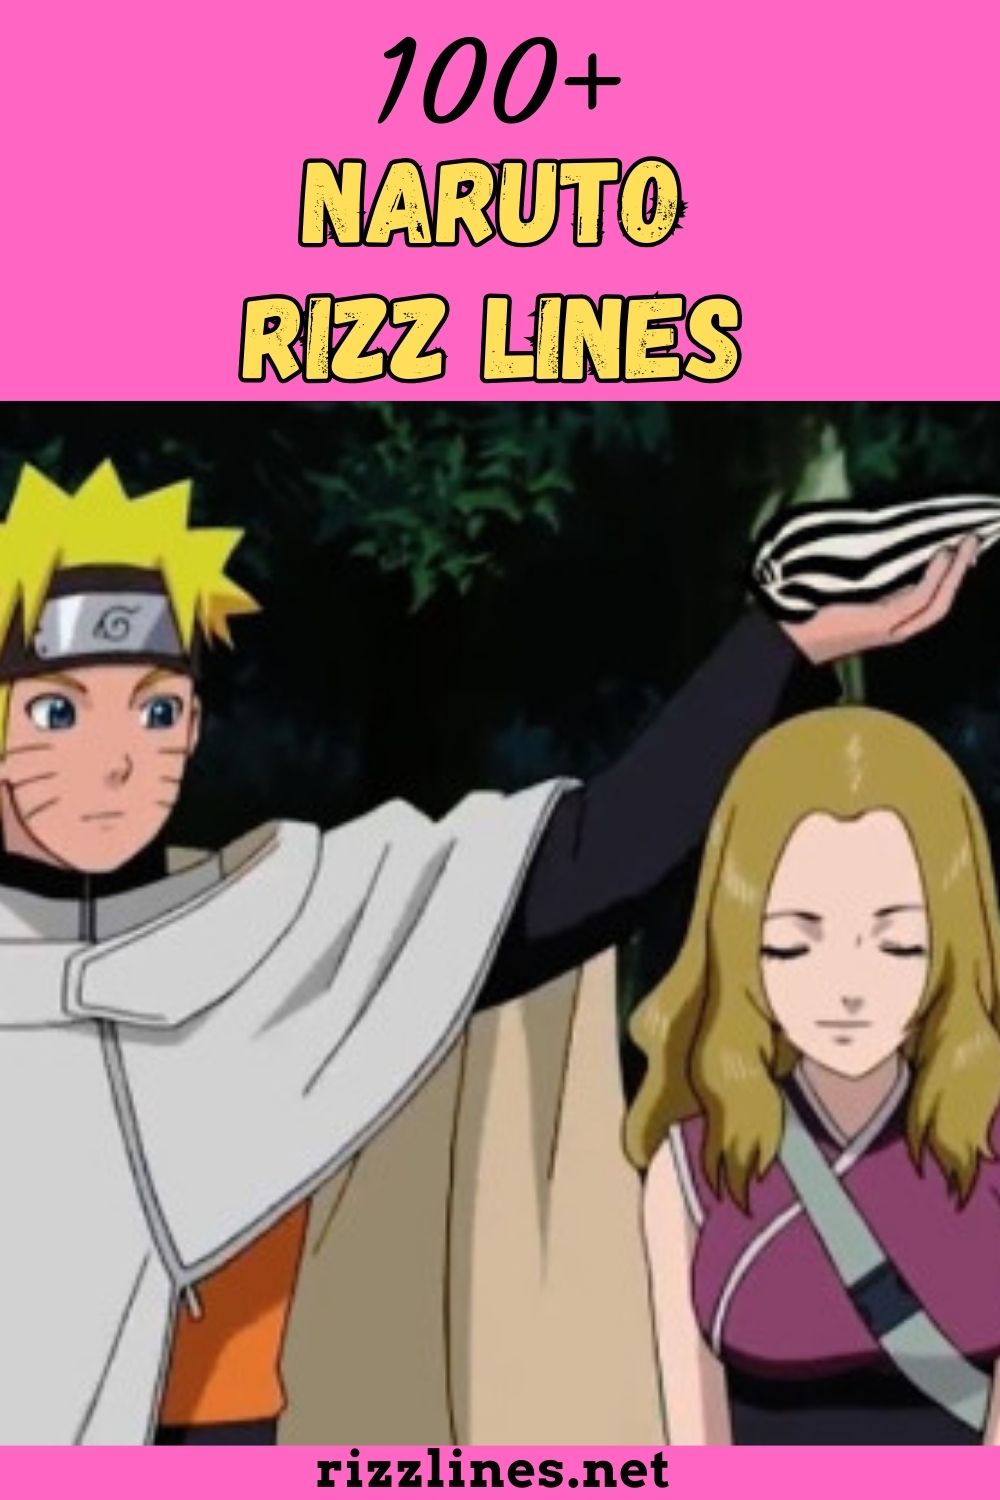 Naruto Rizz Lines